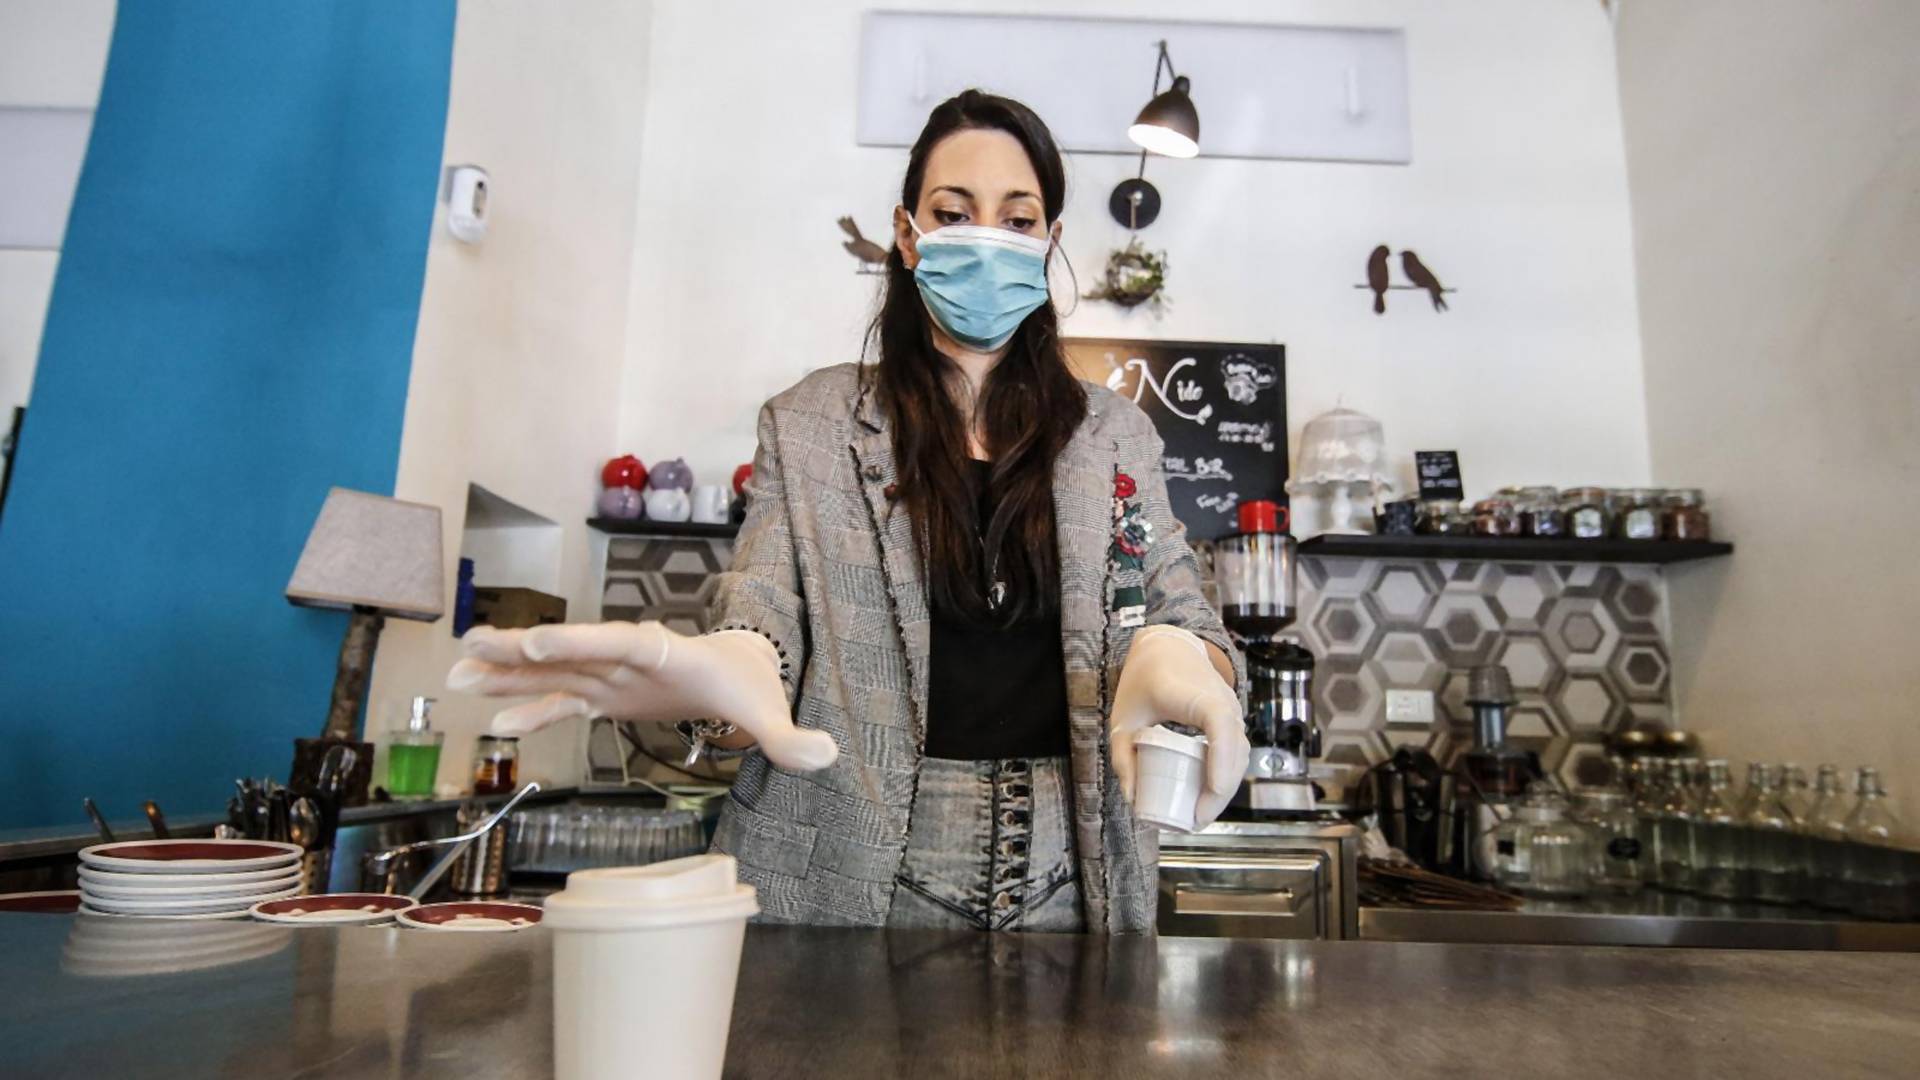 Beograđani su našli način da smanje rizik od zaraze koronom u kafićima i ovo je genijalno